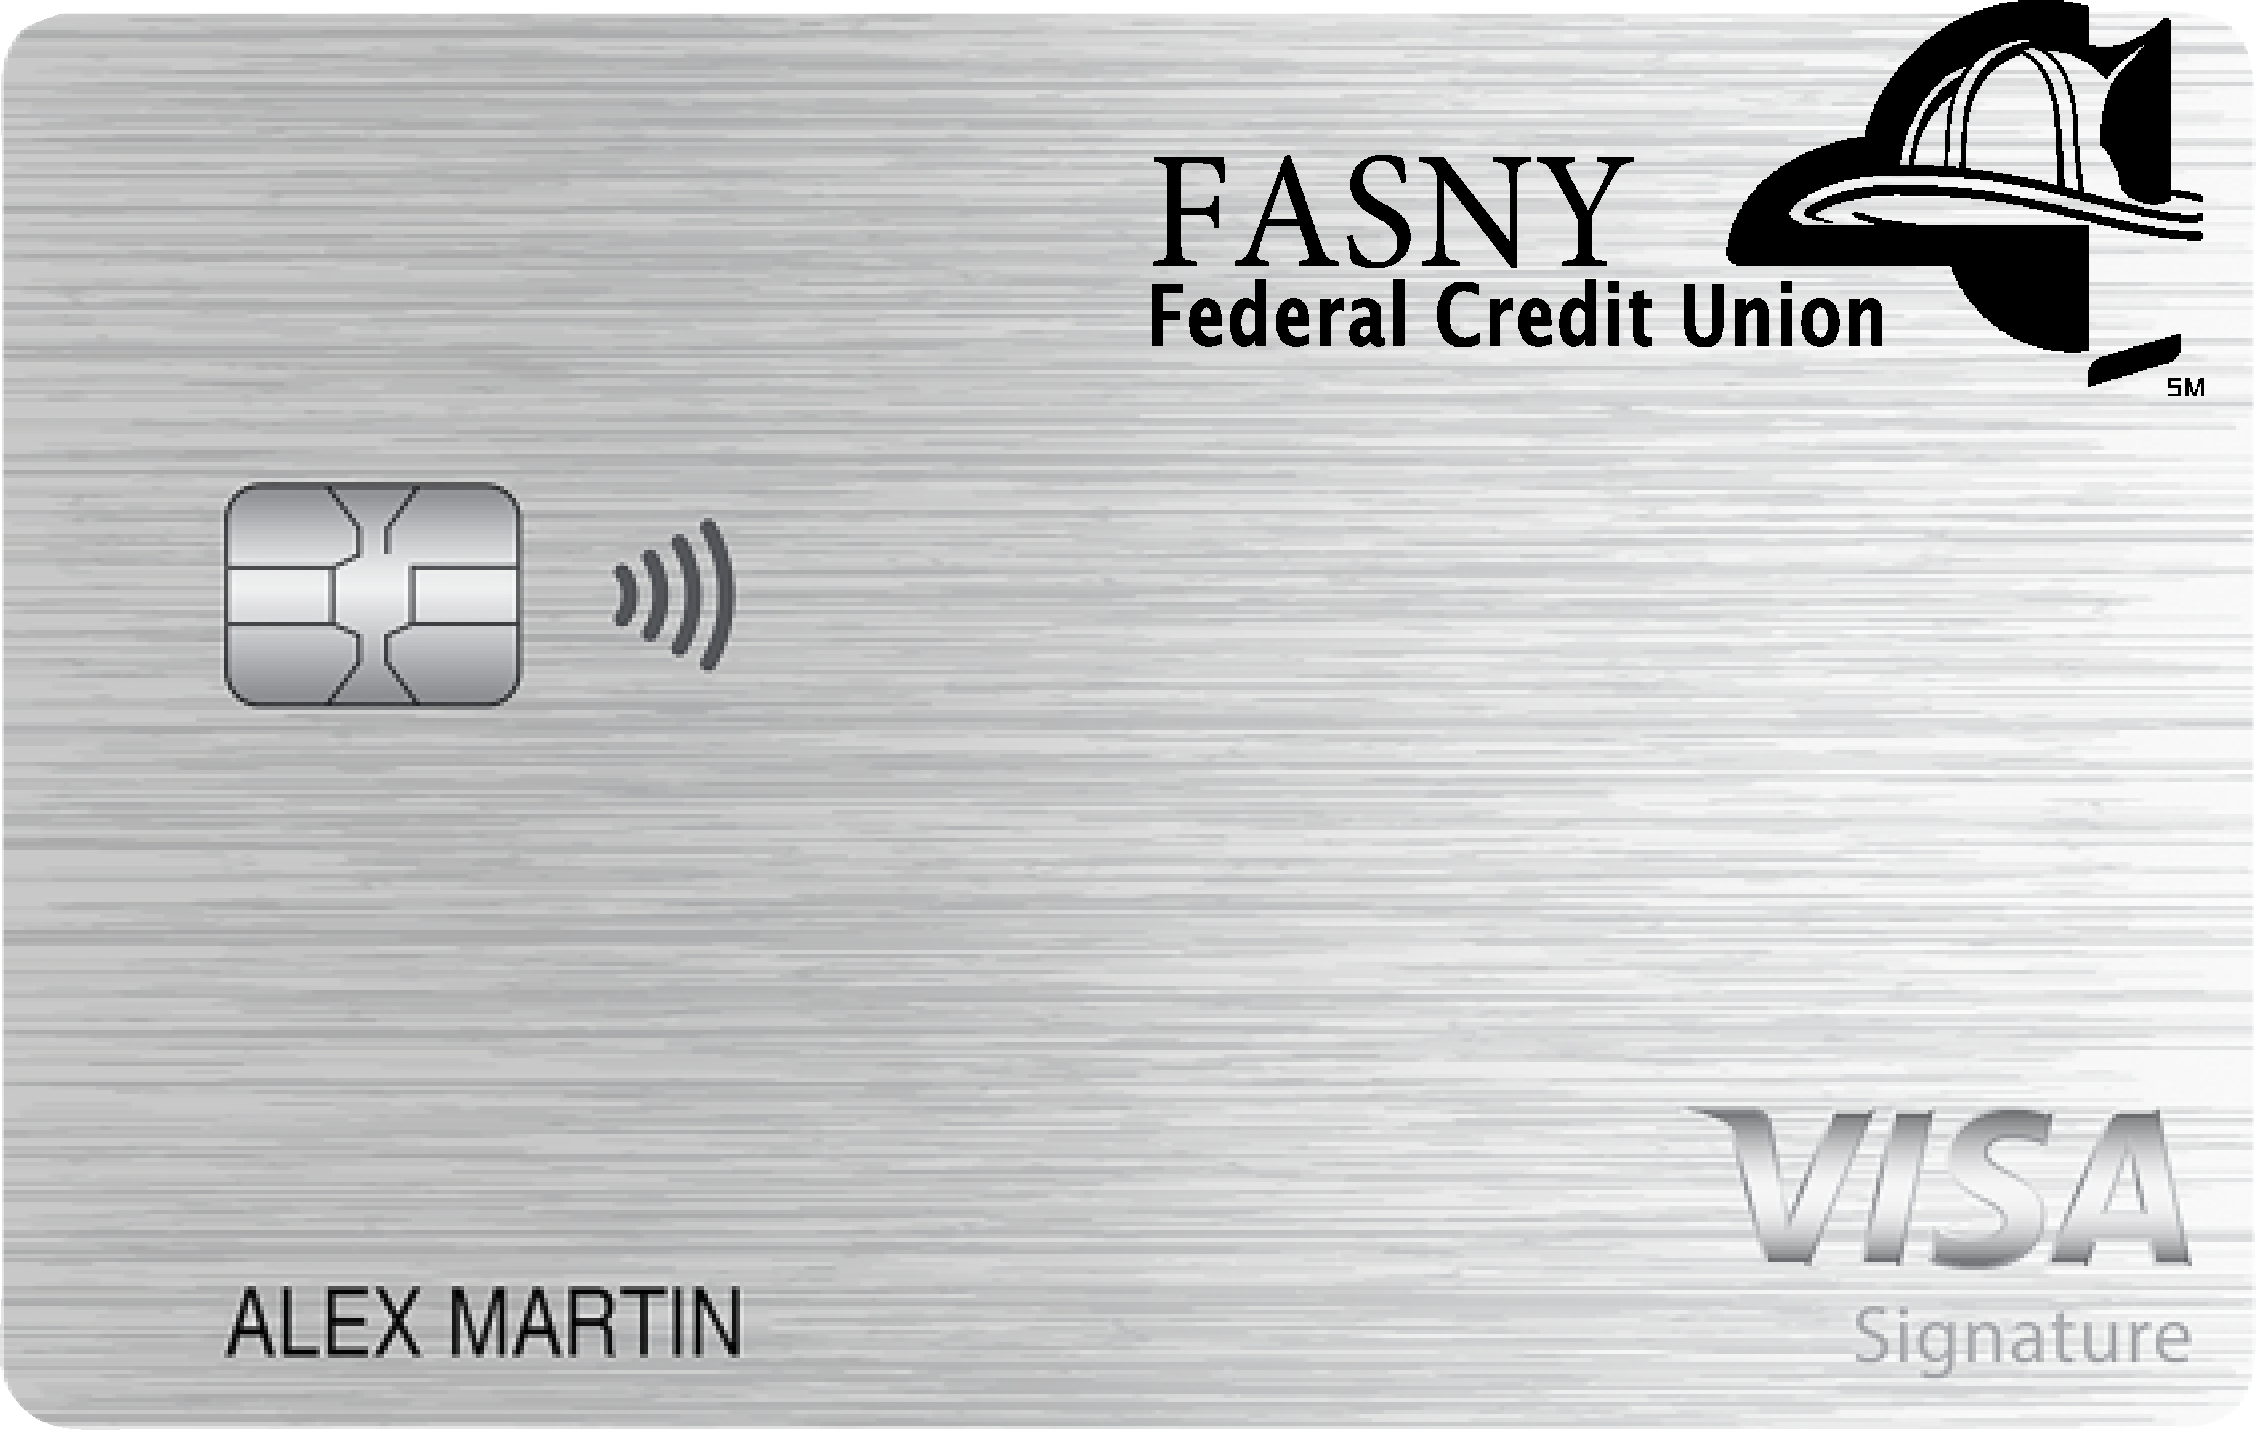 FASNY Federal Credit Union